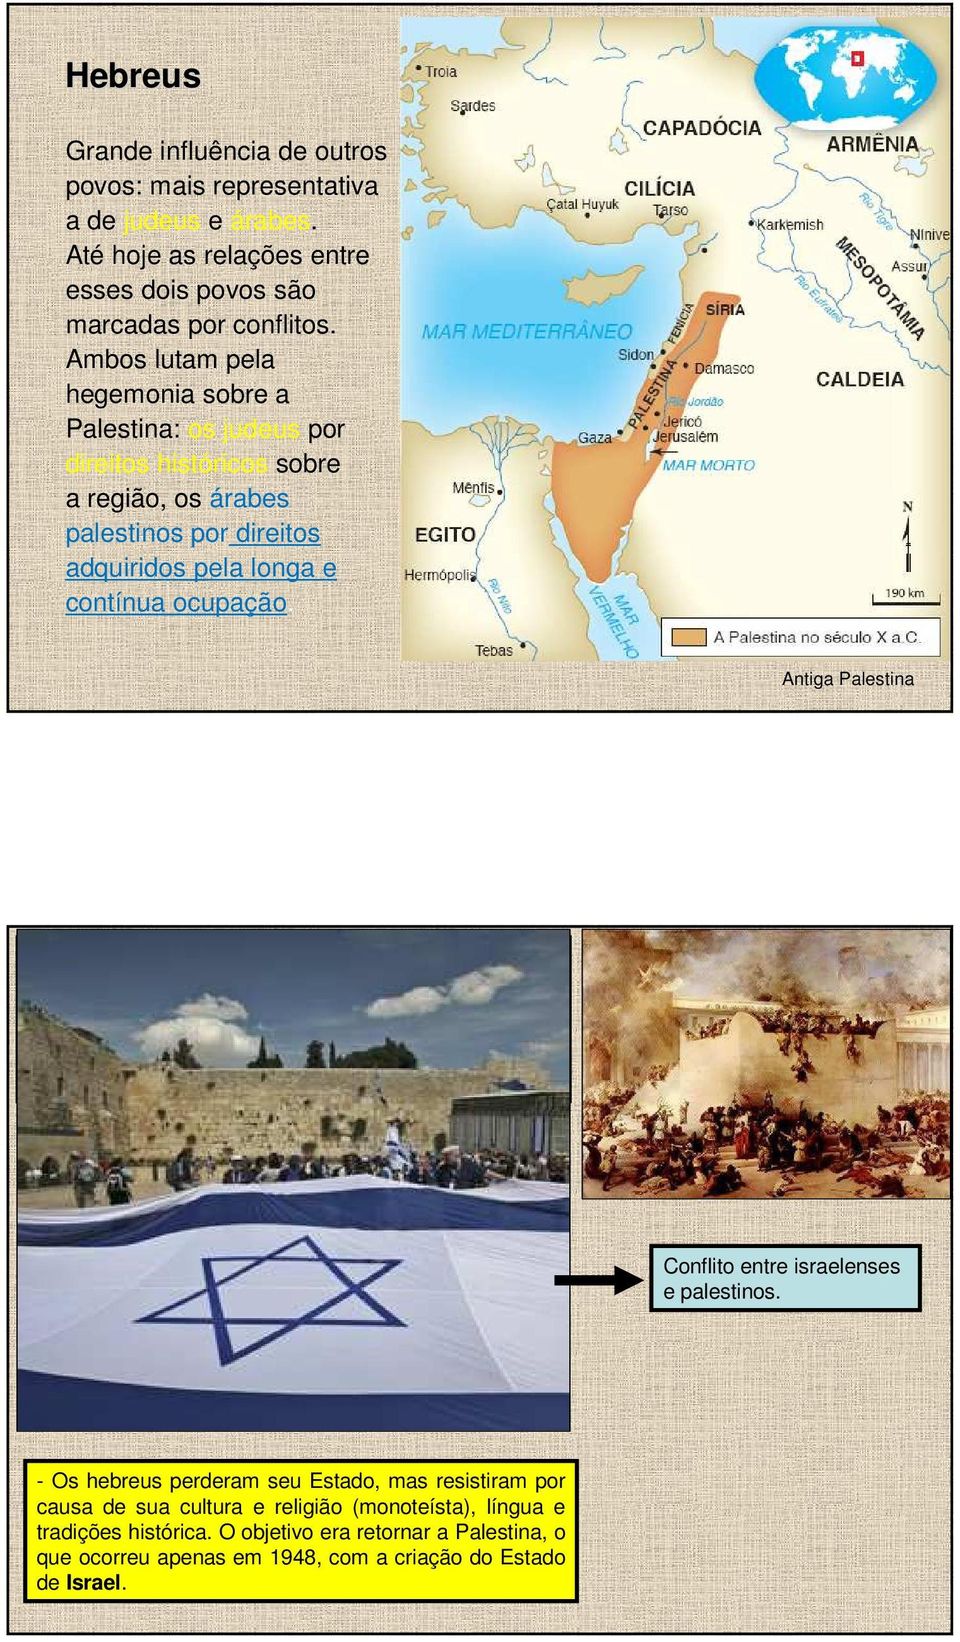 Antiga Palestina VI- Diáspora dos hebreus: - Depois da destruição de Jerusalém pelos romanos em 70 d.c.